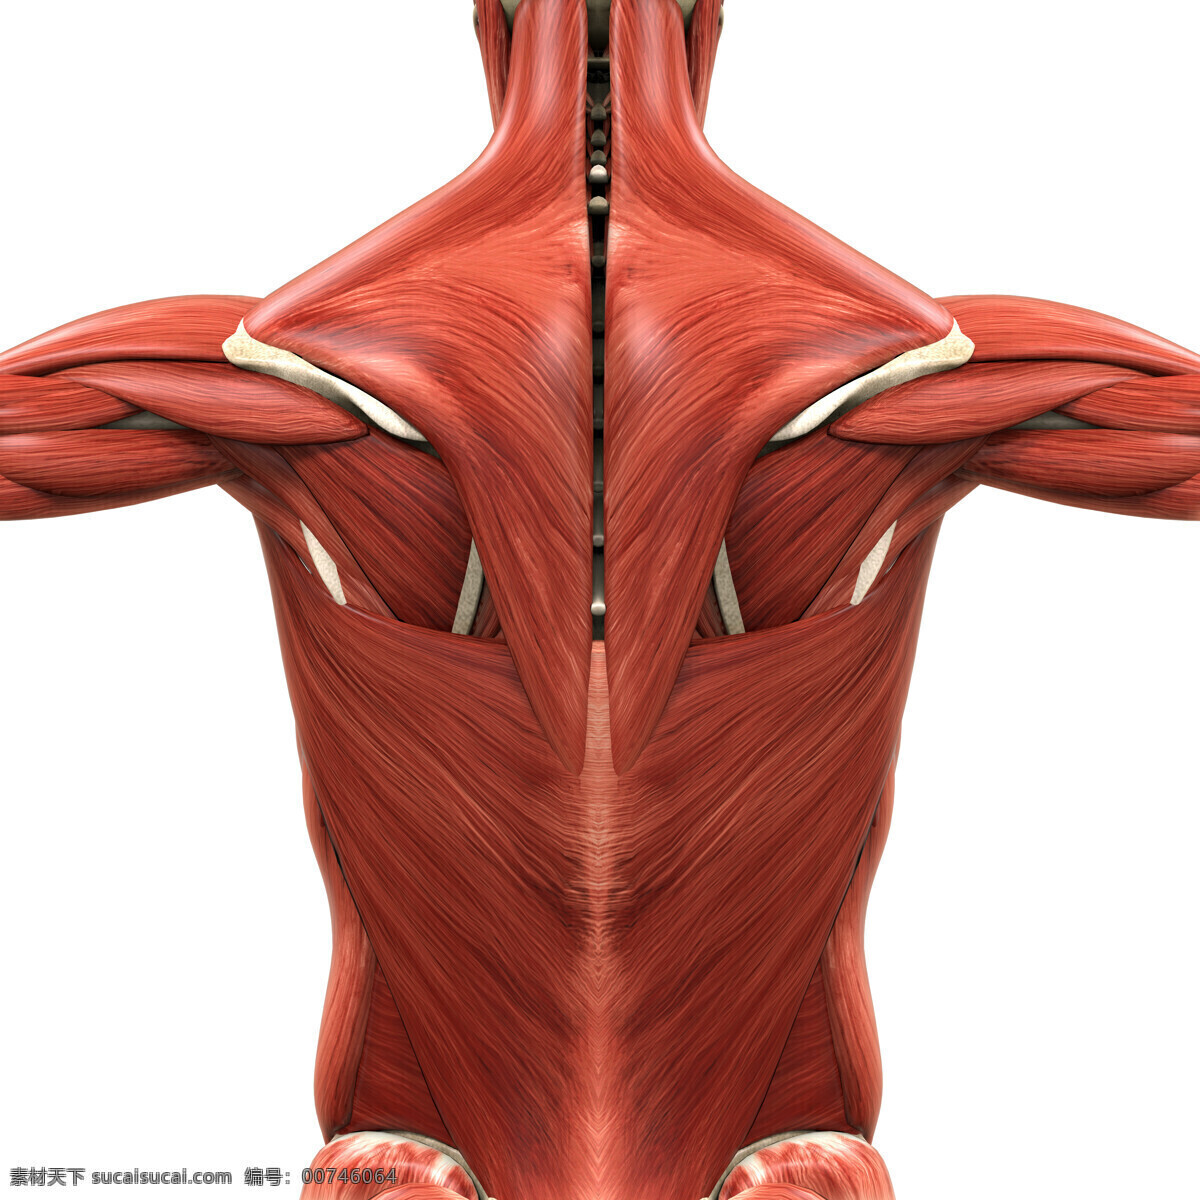 人体 背部 肌肉 组织 背部肌肉 人体肌肉组织 人体肌肉器官 肌肉结构 人体解剖学 医疗护理 现代科技